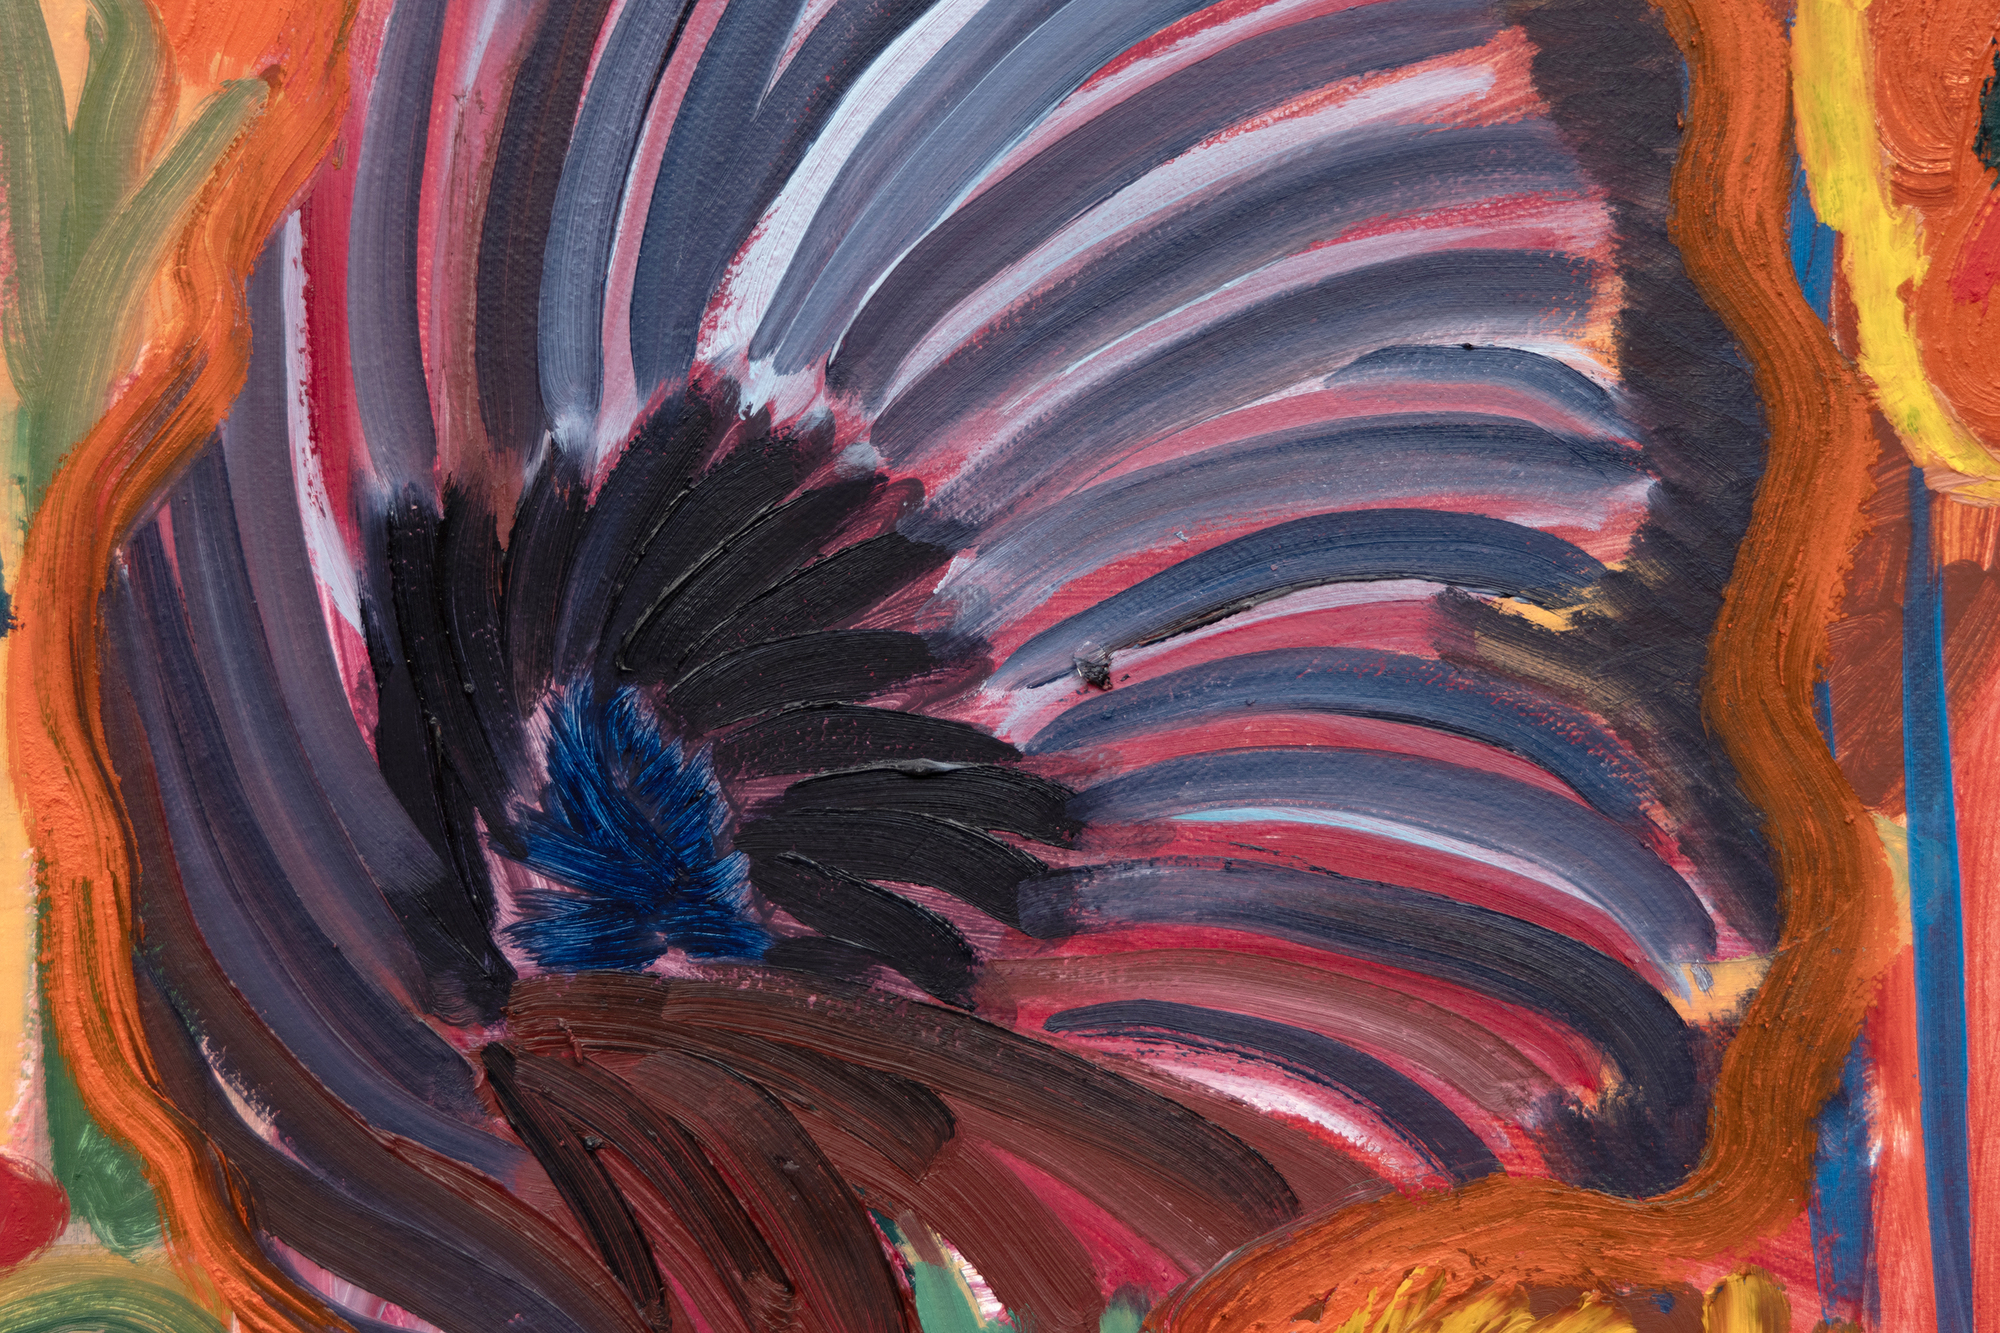 沙拉-休斯 1981 年出生于亚特兰大，现居布鲁克林，她以独特的风景画创作手法著称，将历史影响与当代情感相结合。她欢快的色调让人联想到亨利-马蒂斯等大师的作品，传达出大卫-霍克尼时尚、大胆的视觉效果，同时也承认风景画具有更广泛的传统，包括新艺术运动、野兽派和德国表现主义的影响。All the Pretty Faces》是历史艺术运动和当前数字图像的现代综合体，为观众呈现了一个连接过去和现在的迷人的虚构世界。这也是休斯关于她充满奇幻元素的创新风景画最引人注目的名言之一：&quot;我常常把花草树木想象成人物。有时，即使是画中的一朵浪花或一个太阳，也会有自己的个性，所以这取决于作品的结果&quot;。